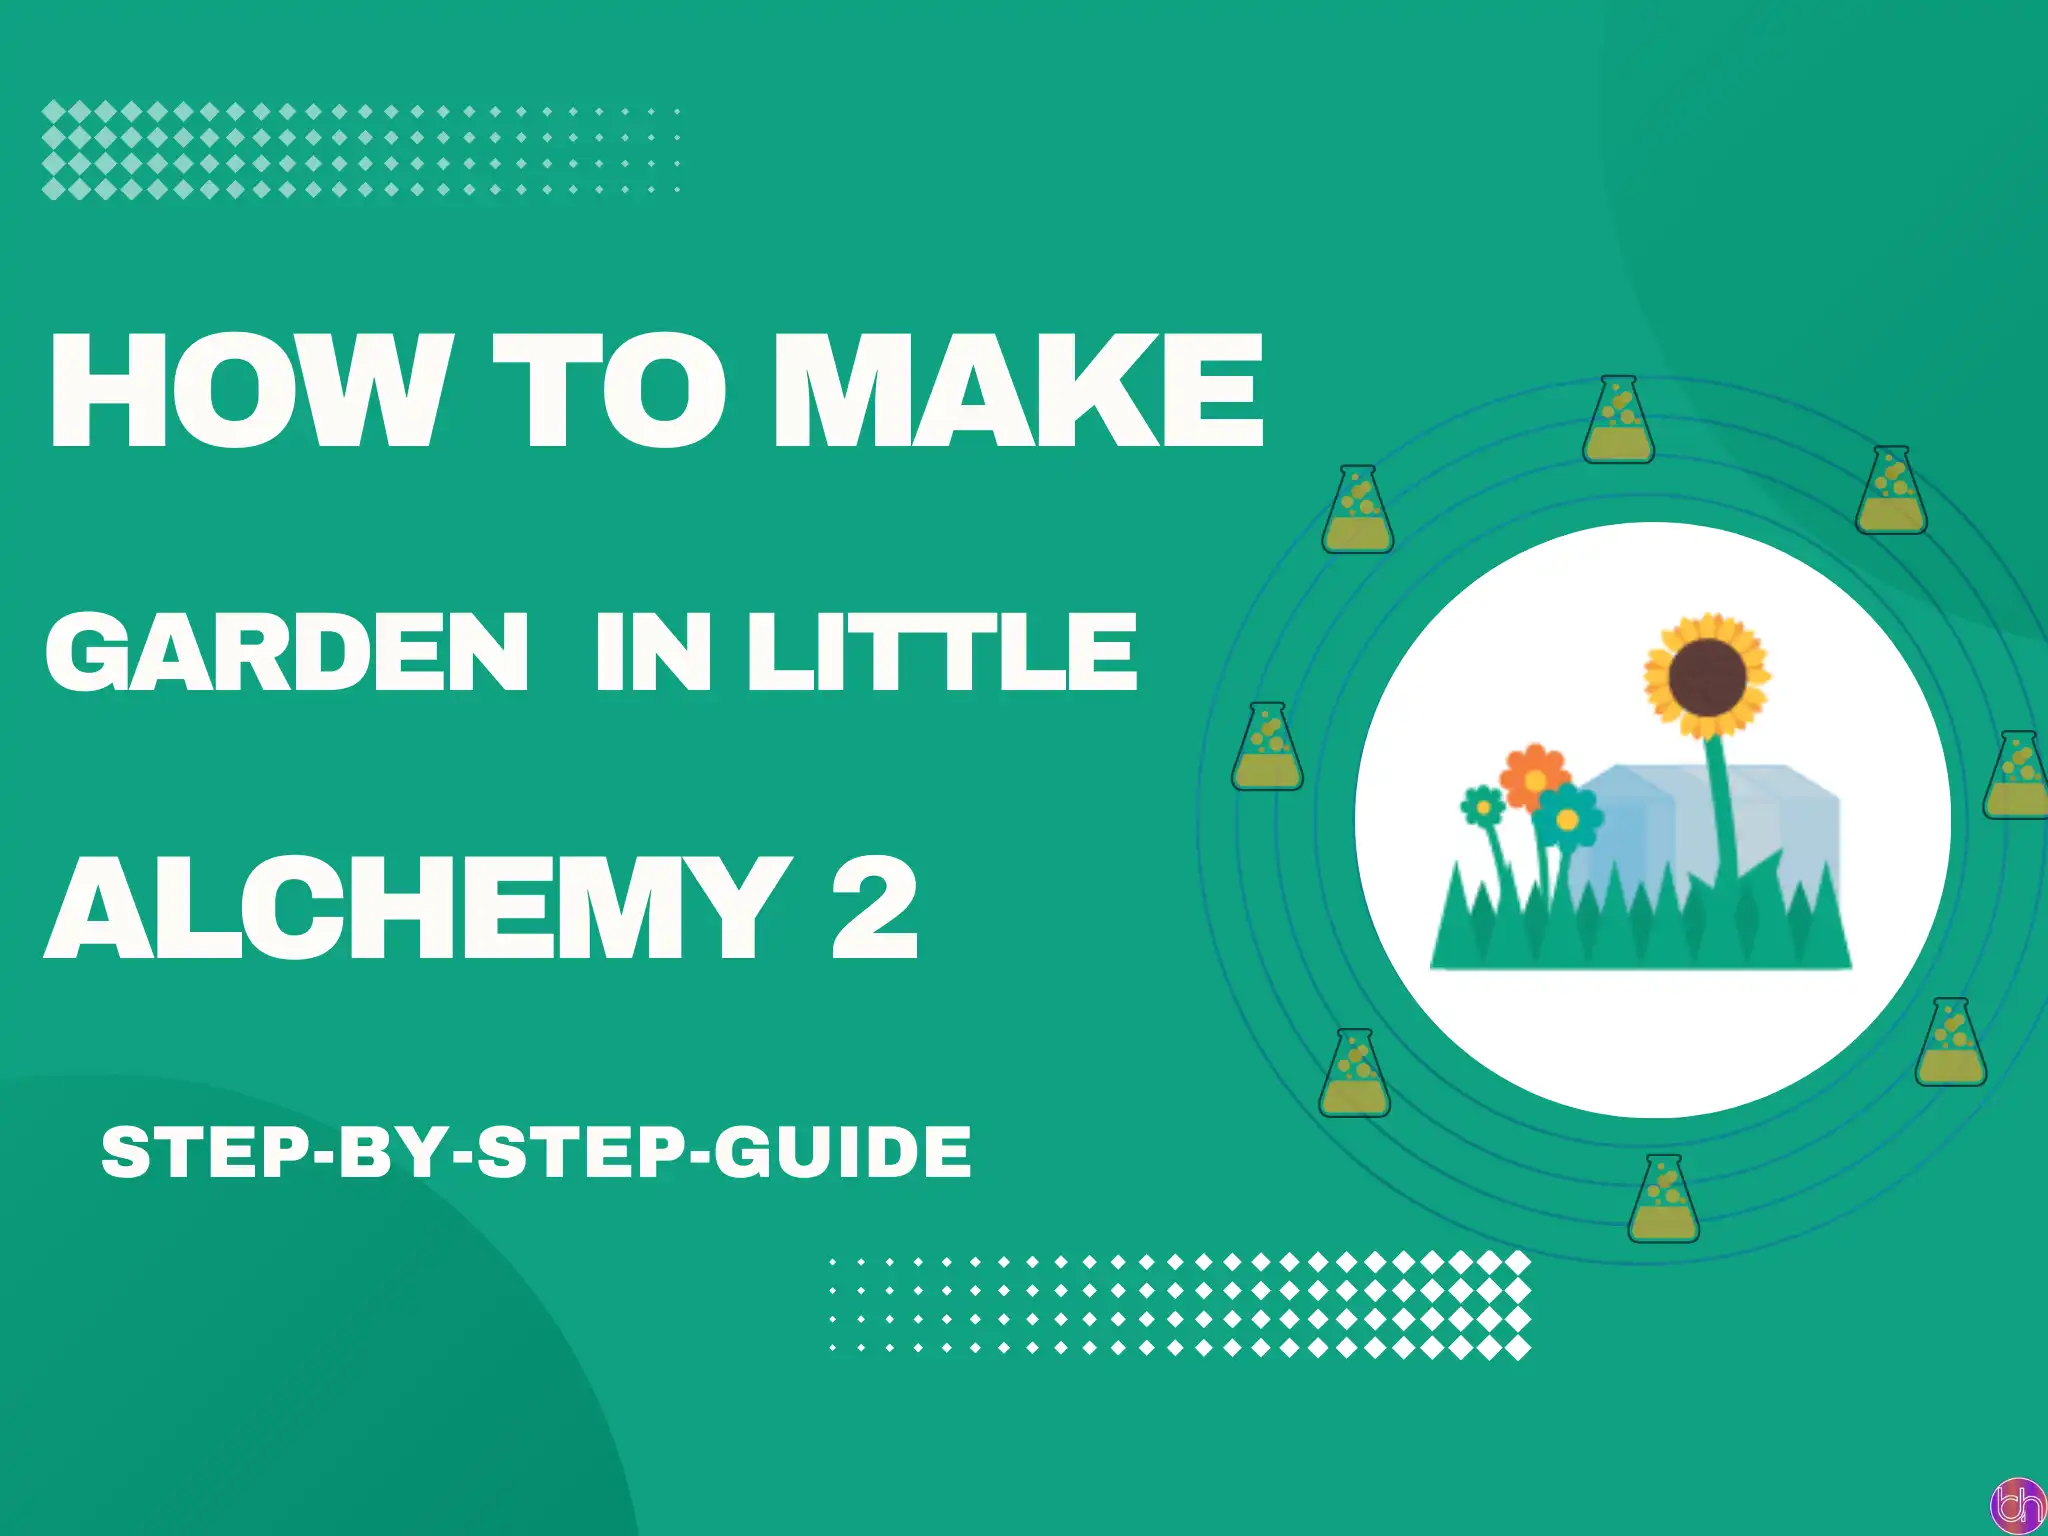 How to make Garden in little alchemy 2